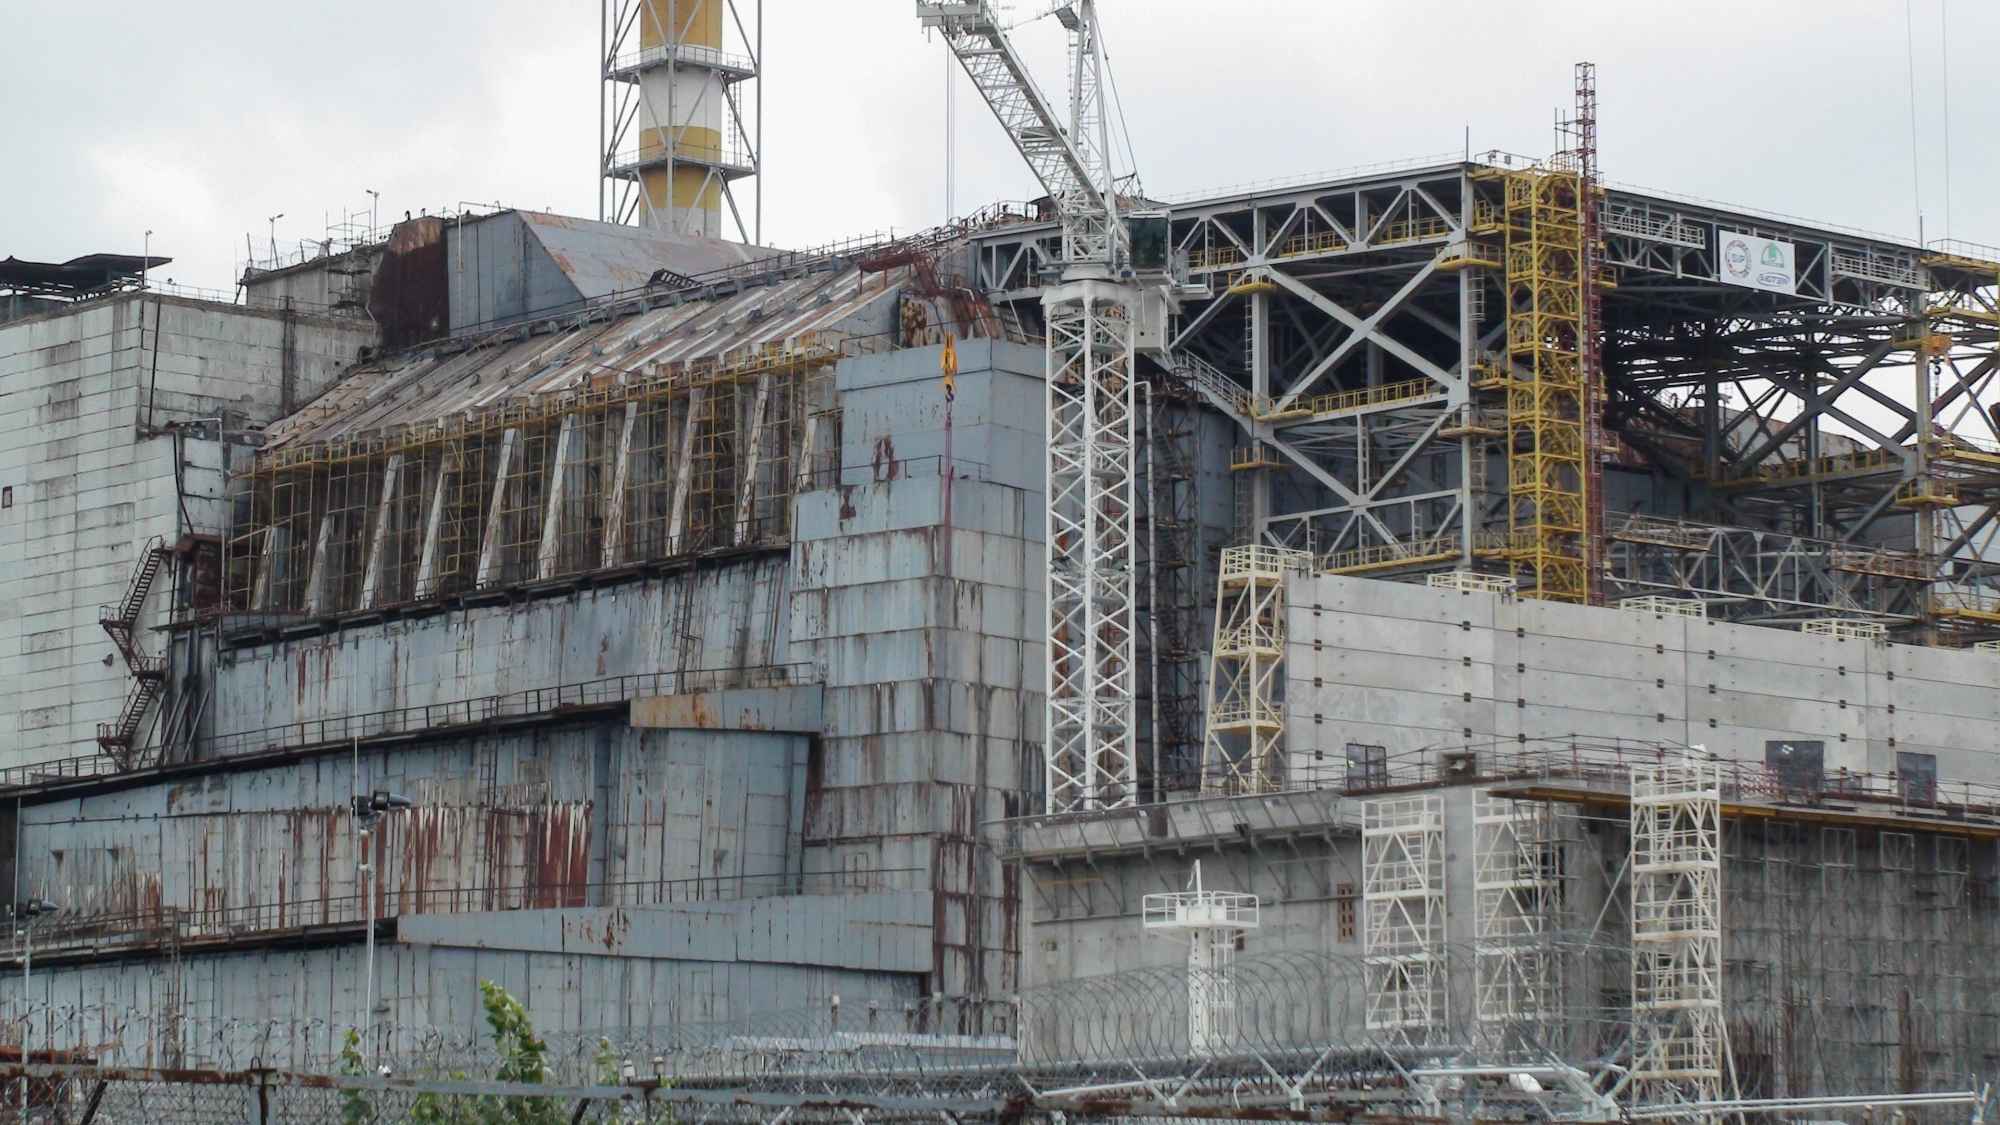 Reise ins Innere von Tschernobyl | Nuklearia